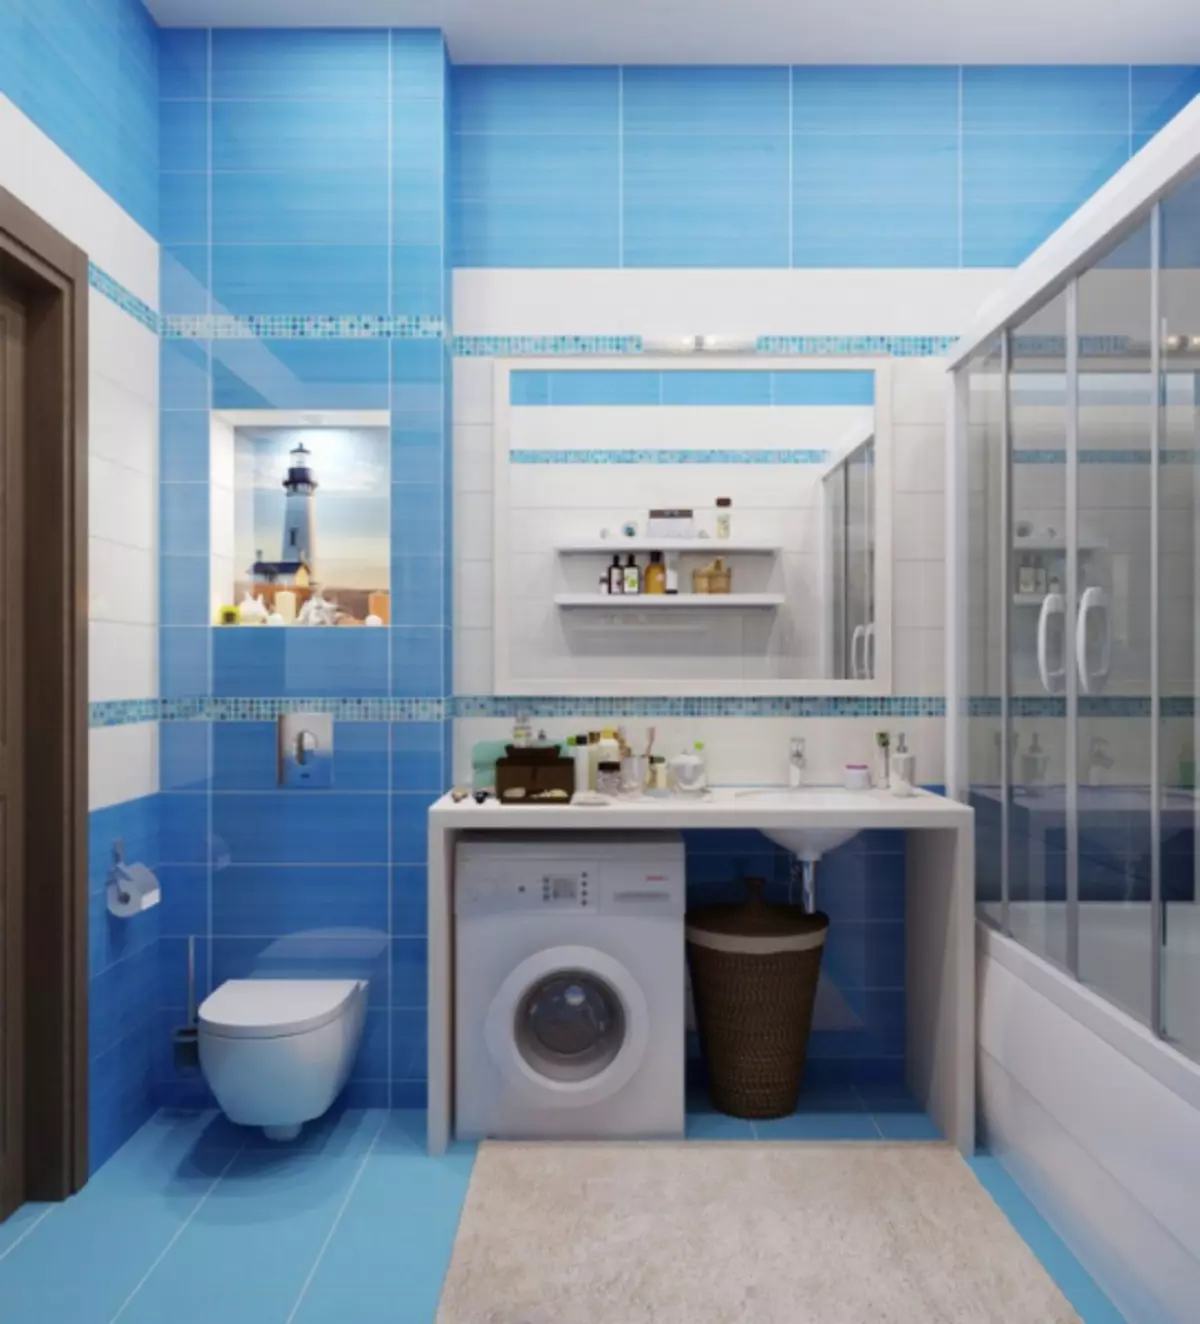 Badkamer Interieur gekombineer met toilet: Hoe om pragtig en prakties op klein spasie te doen (38 foto's)